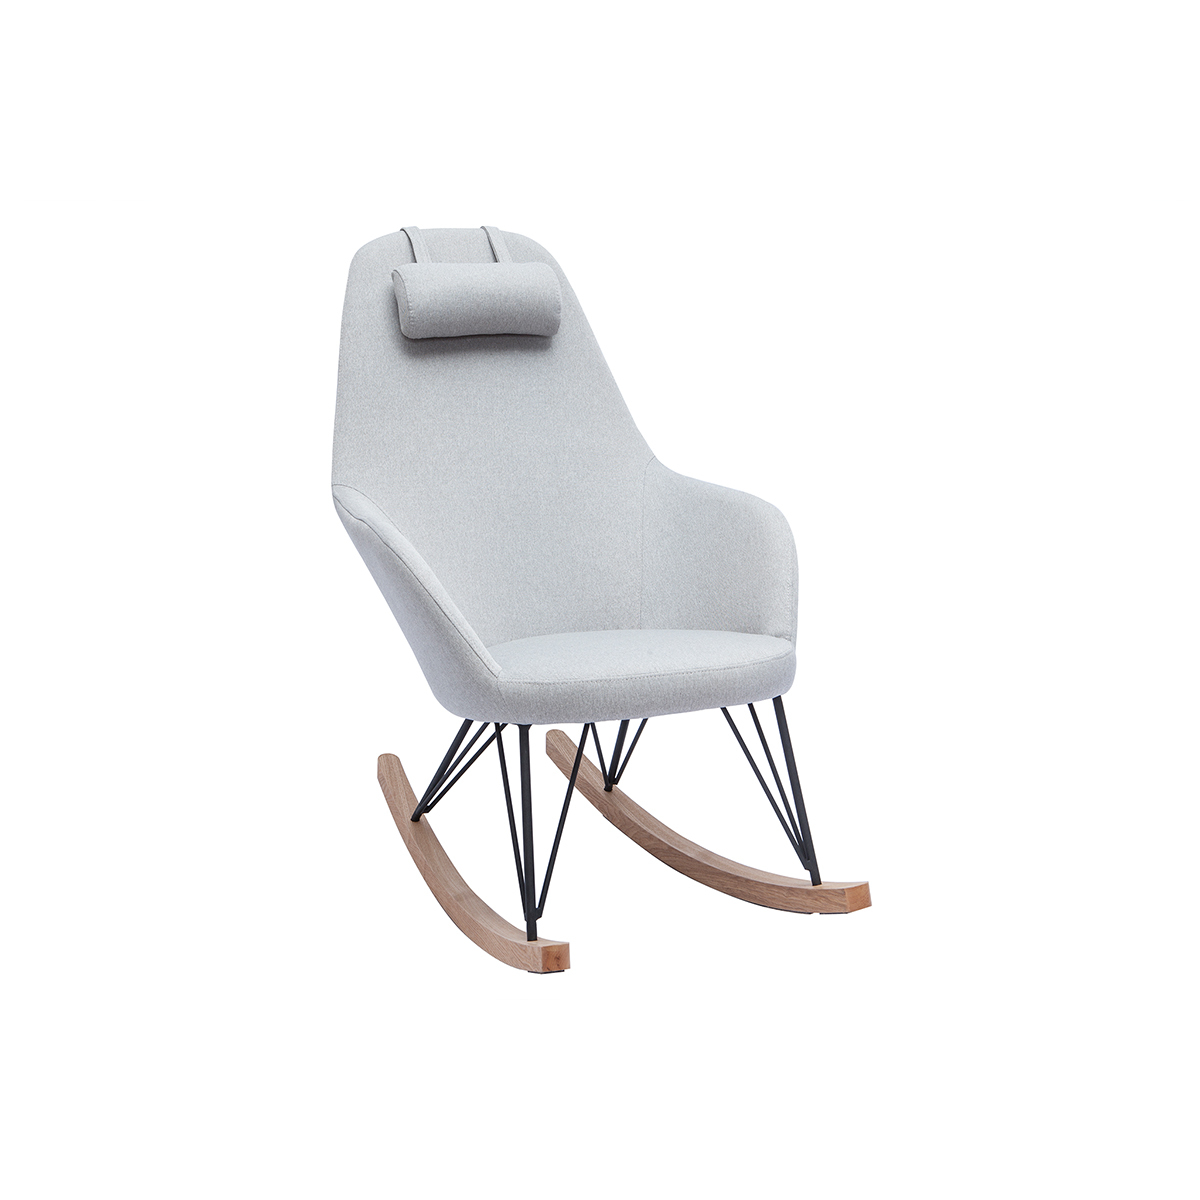 Rocking chair scandinave en tissu gris, métal noir et bois clair JHENE vue1